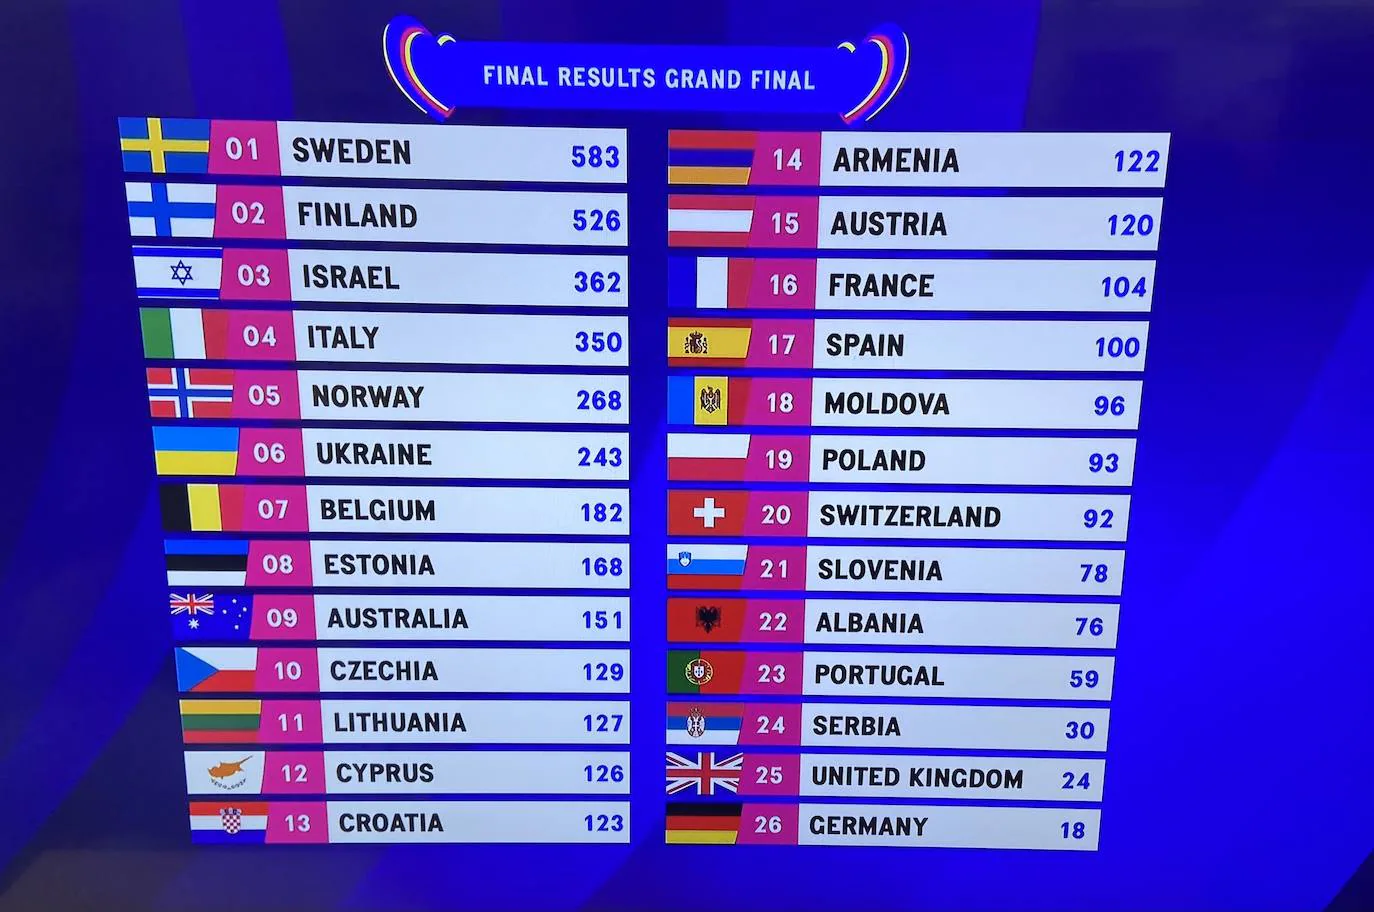 Quienes son los favoritos de eurovision 2023